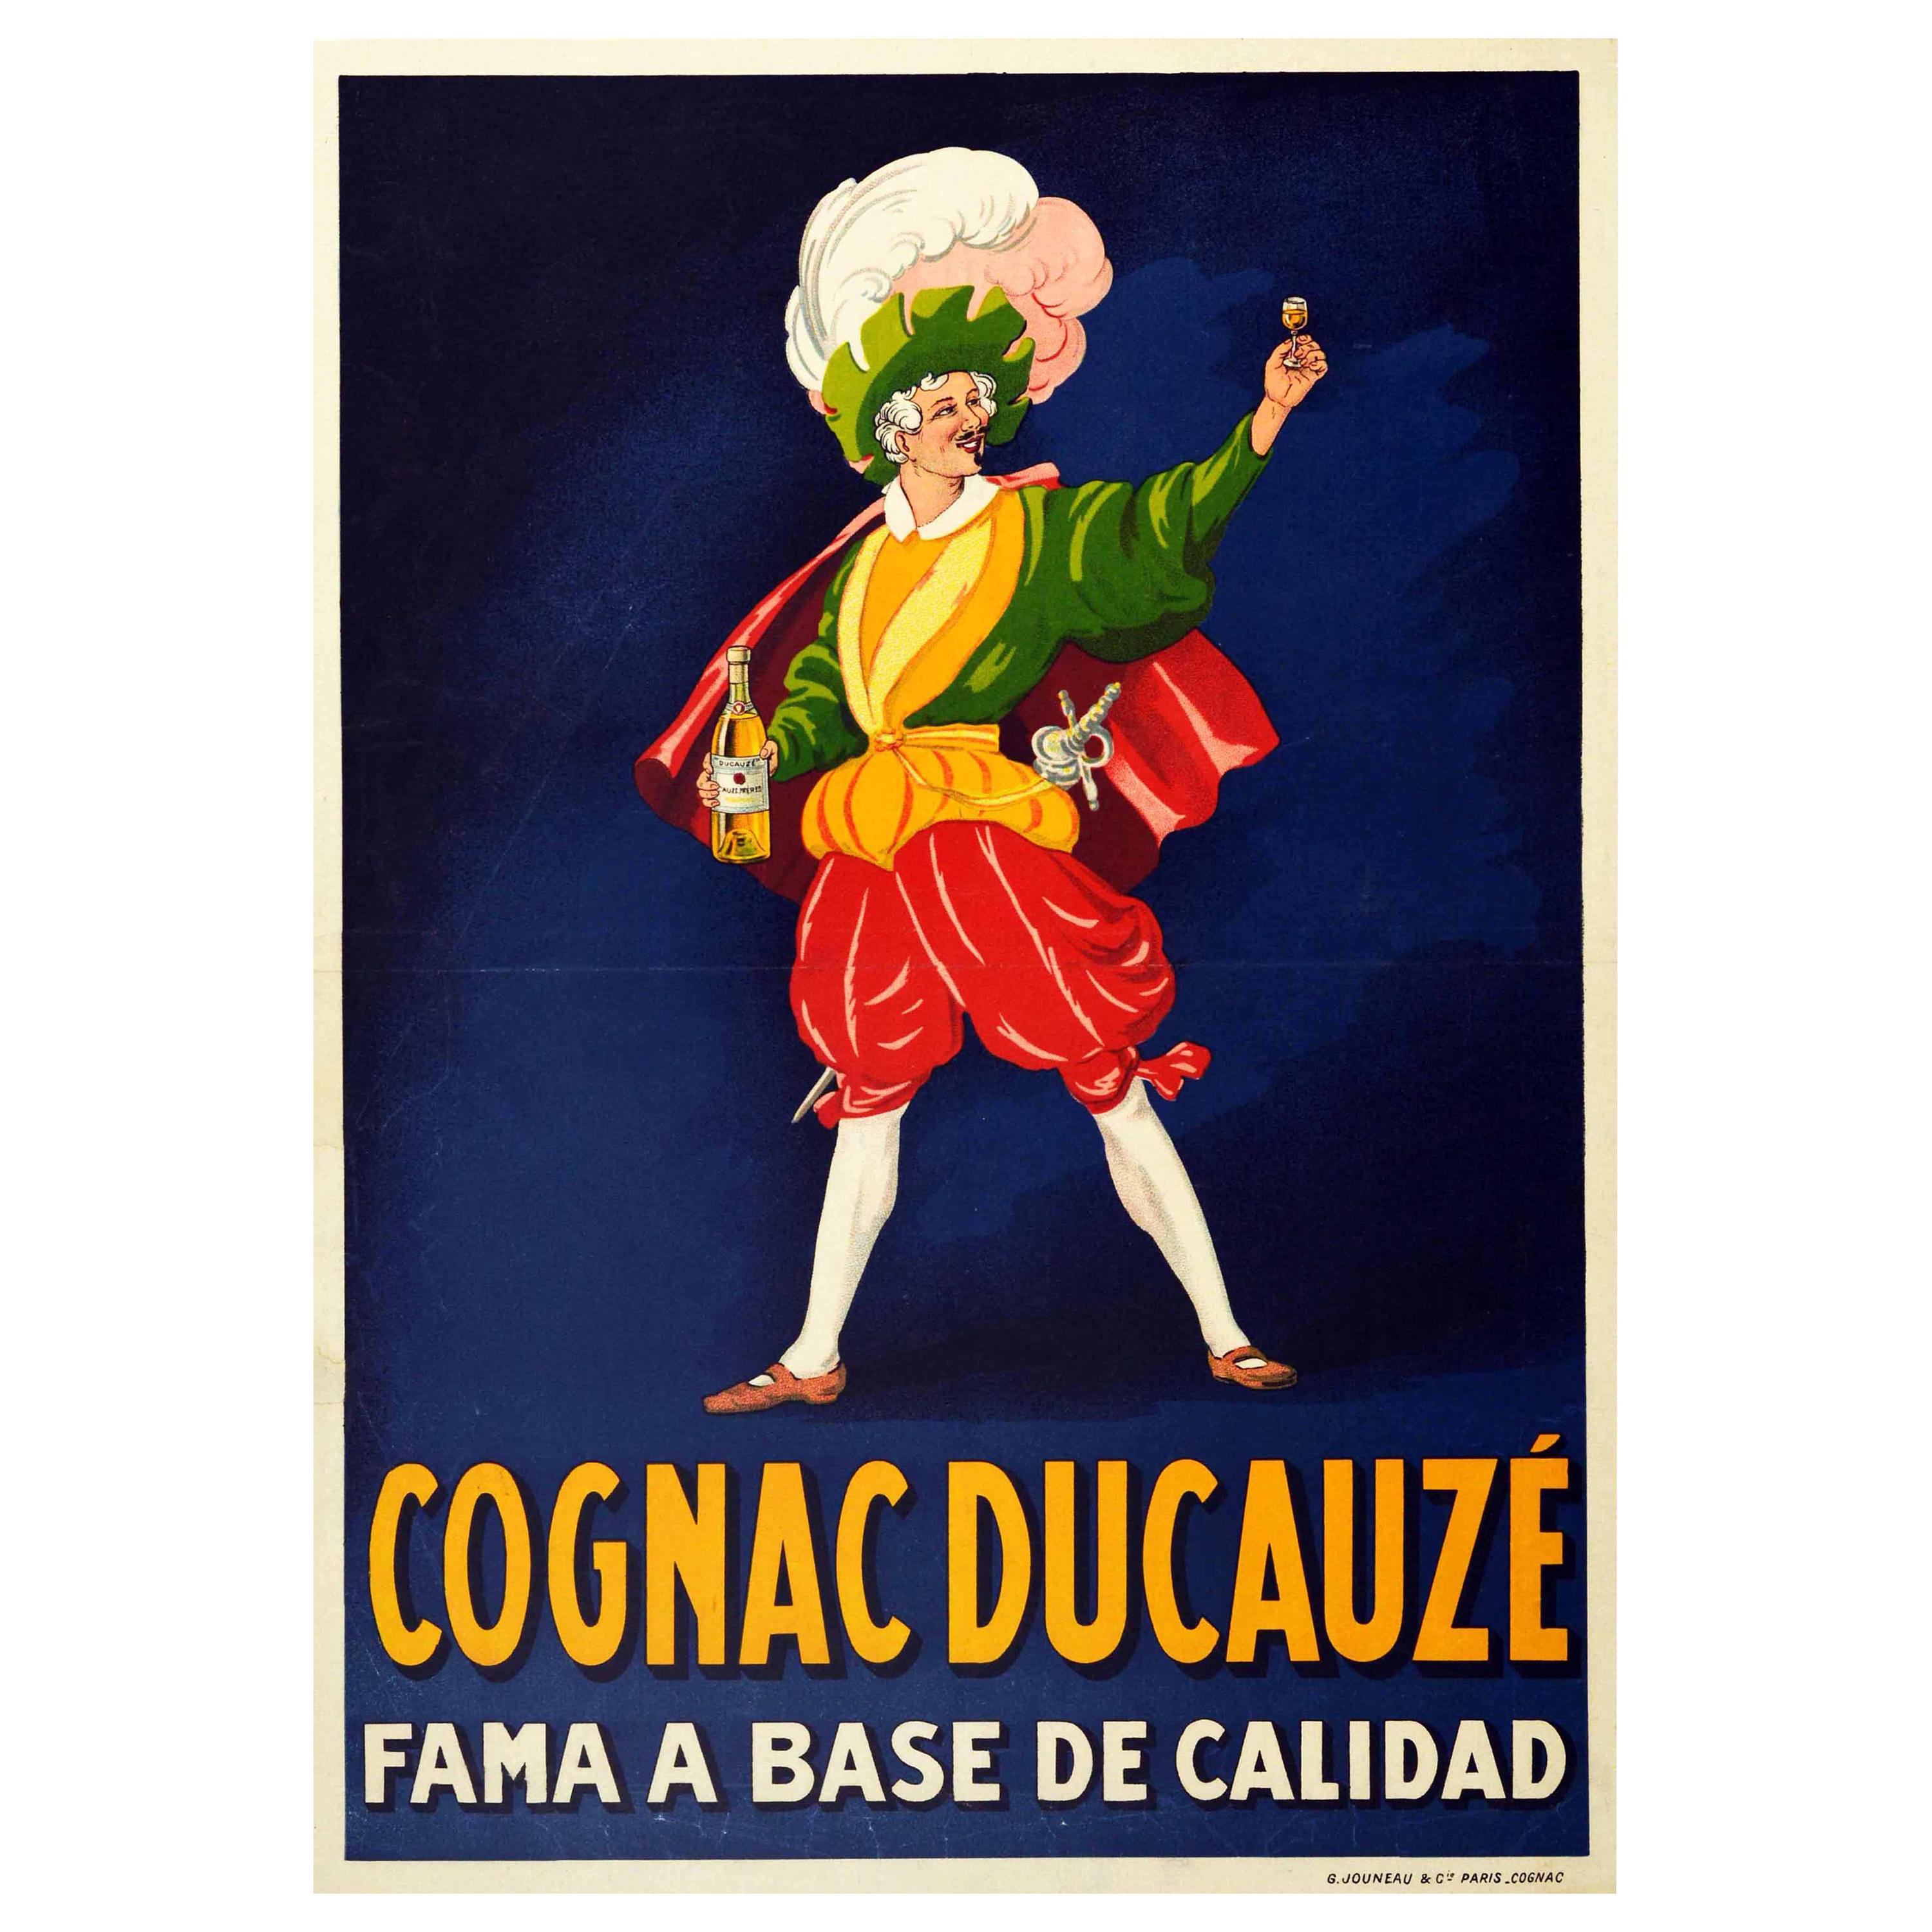 Original Antique Drink Poster Cognac Ducauze Fama A Base De Calidad Fame Quality